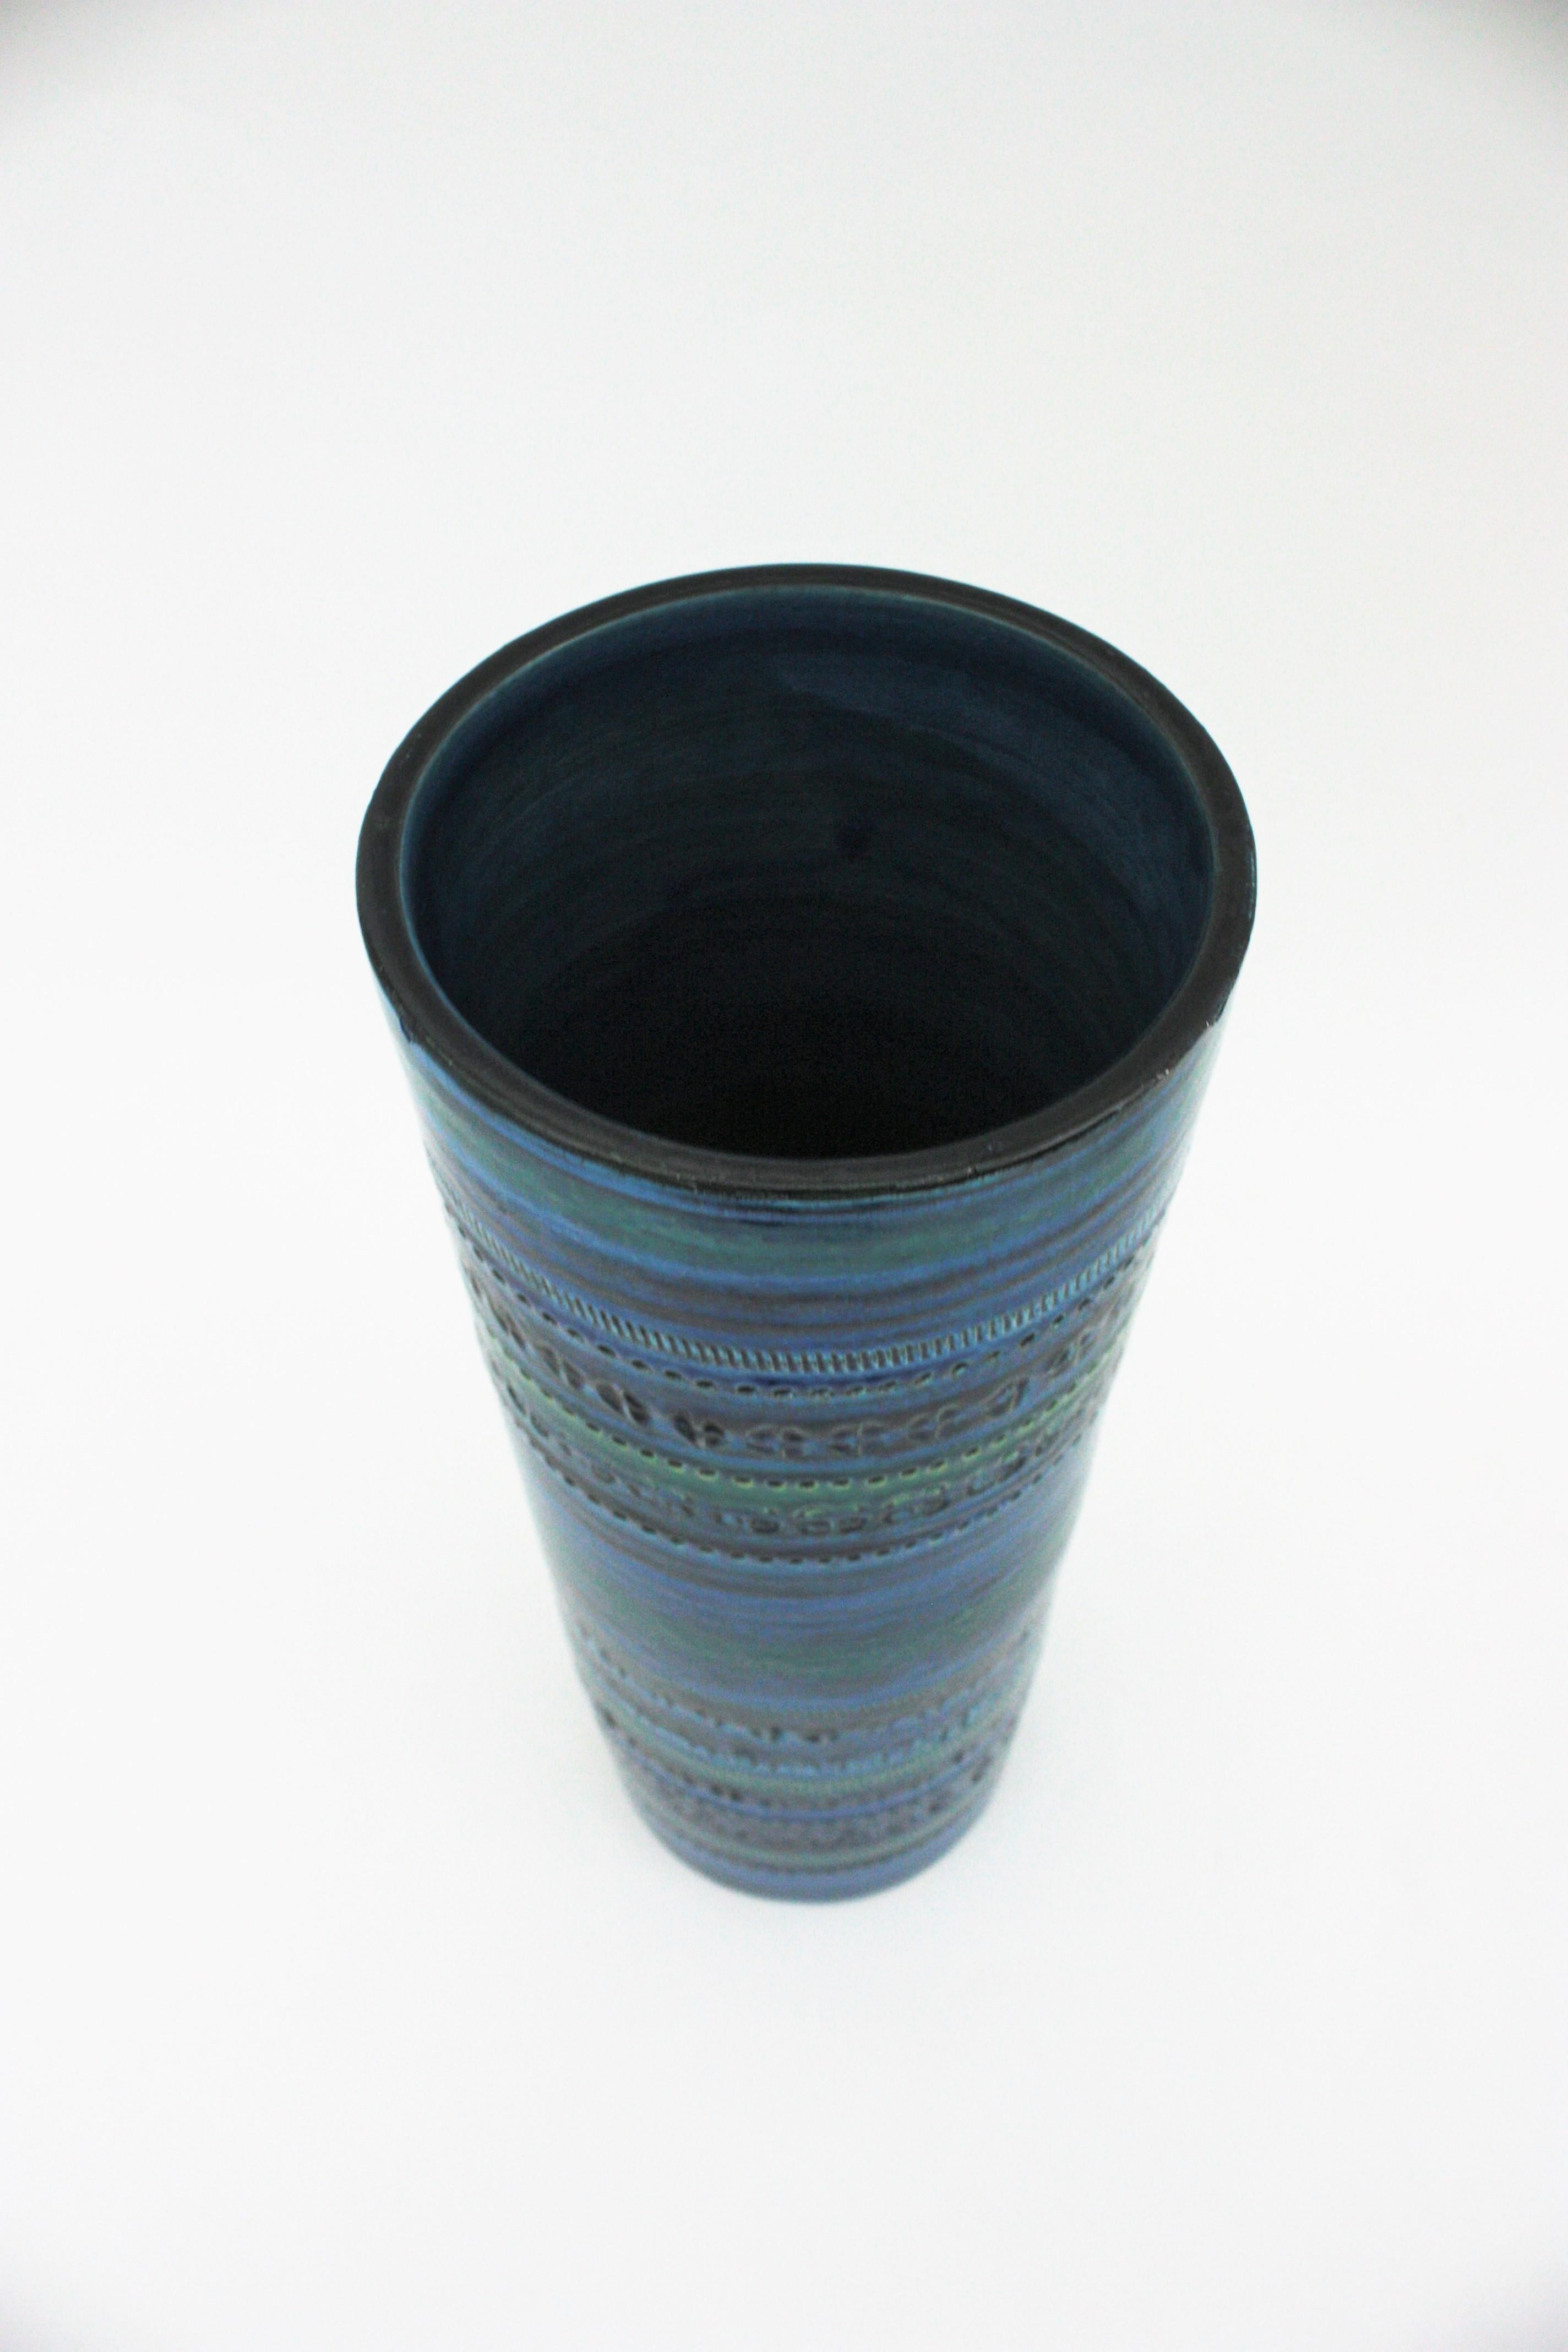 Aldo Londi Bitossi Rimini Blue Glazed Ceramic XL Vase, Italy, 1960s For Sale 4